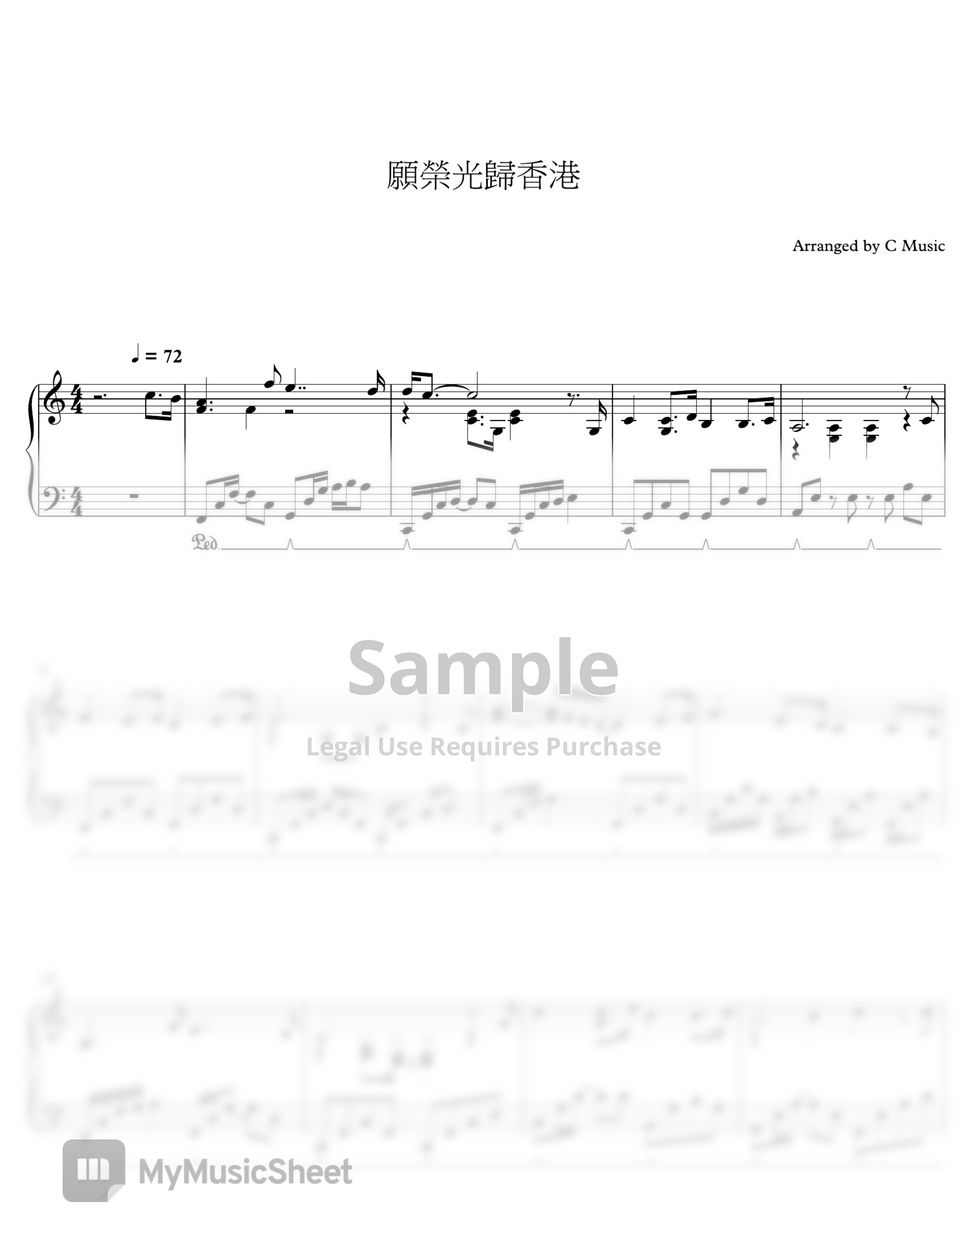 Dgx music - 願榮光歸香港 Glory to Hong Kong by C Music